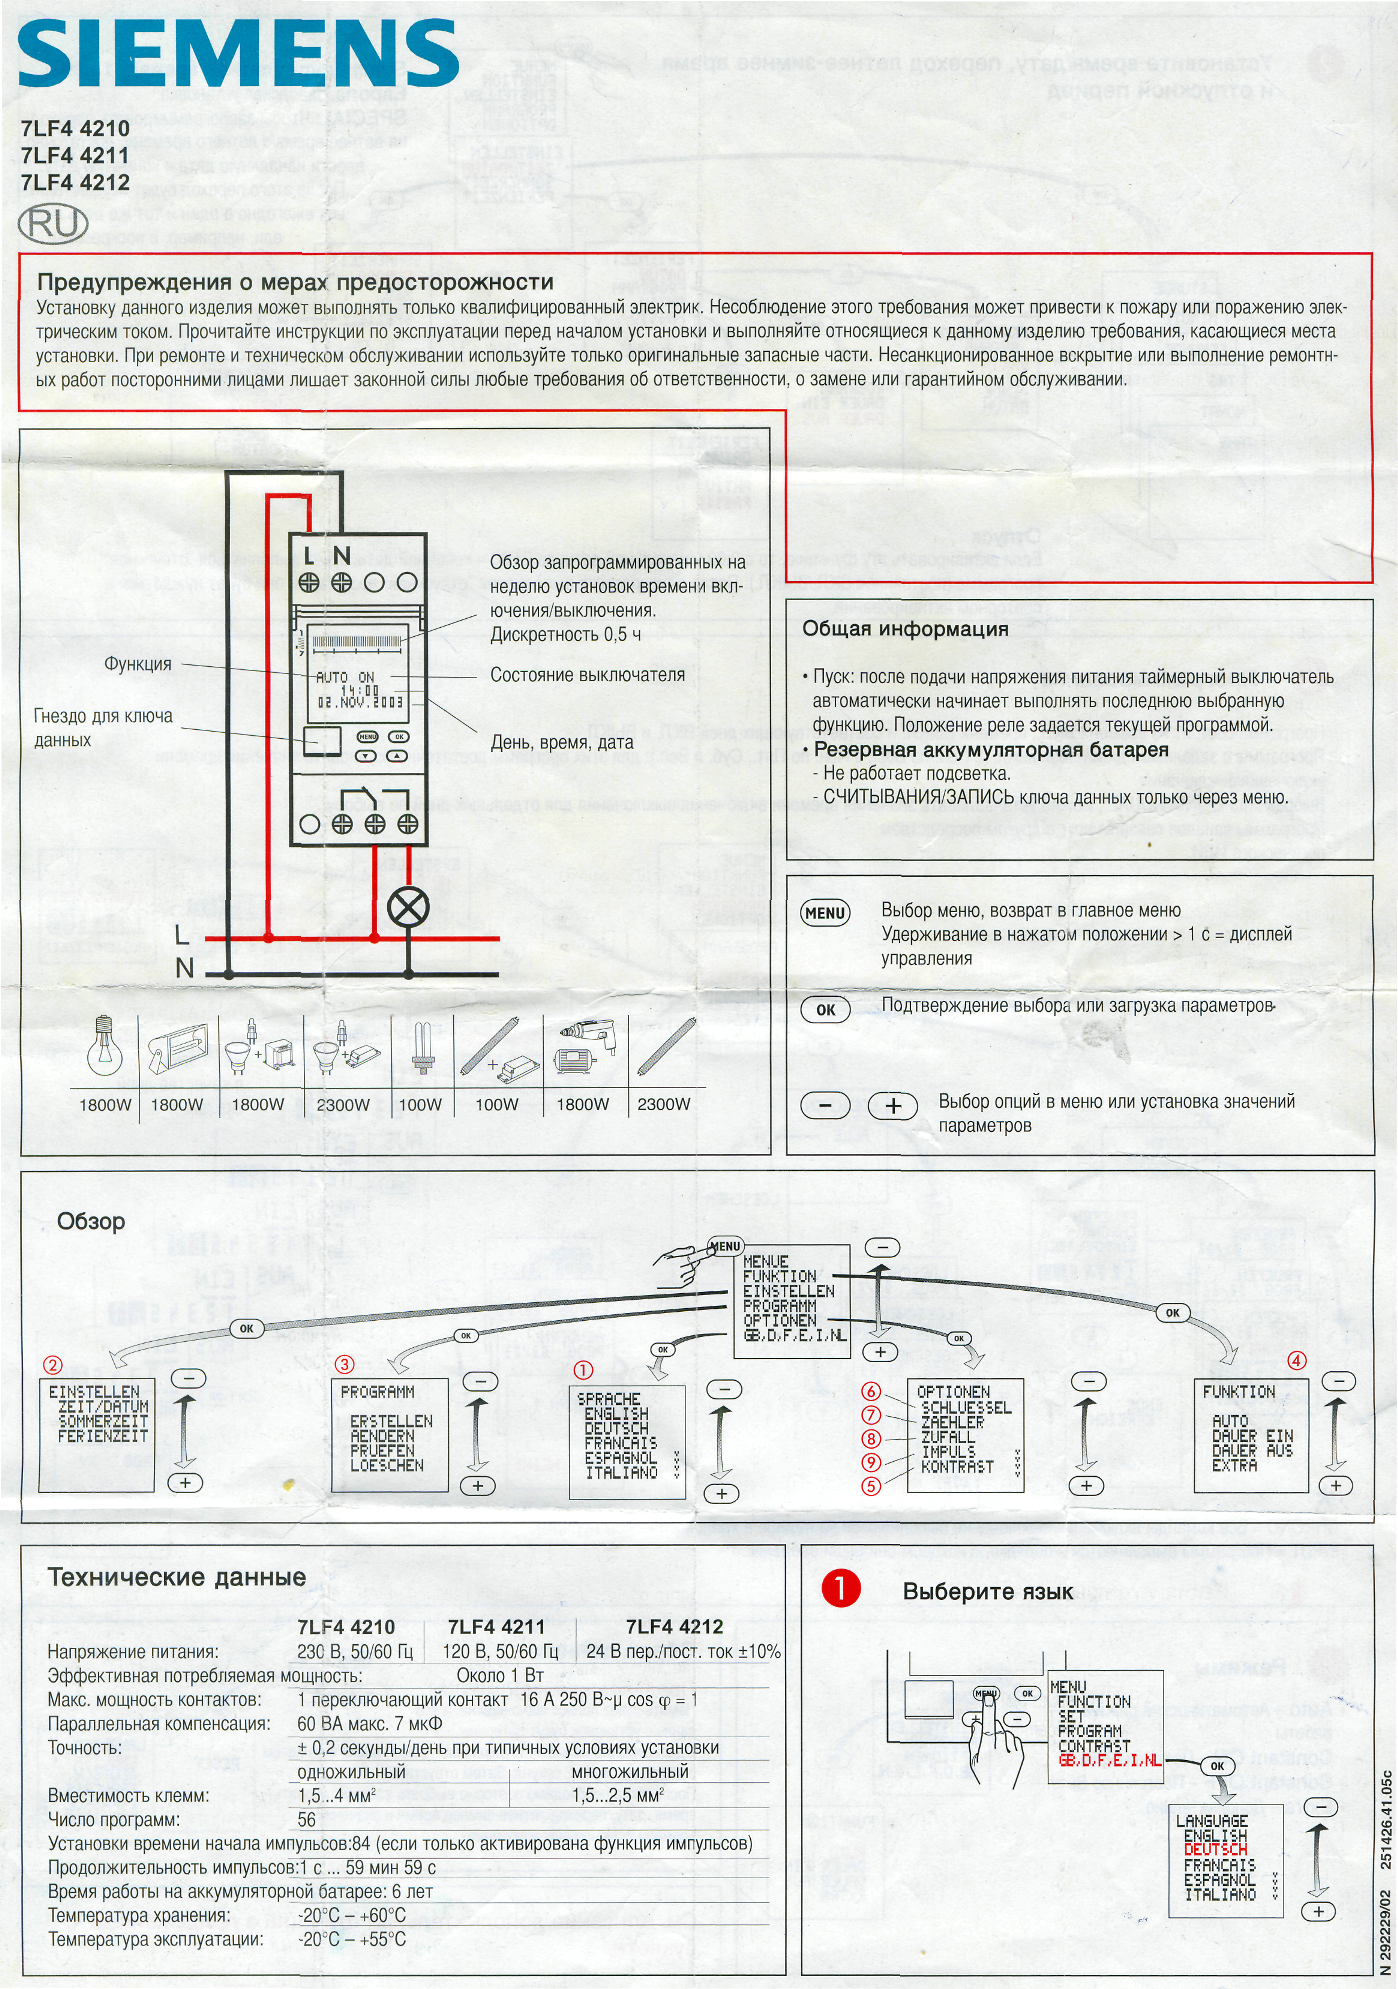 Siemens 7lf4 110 Manual.epubgolkes